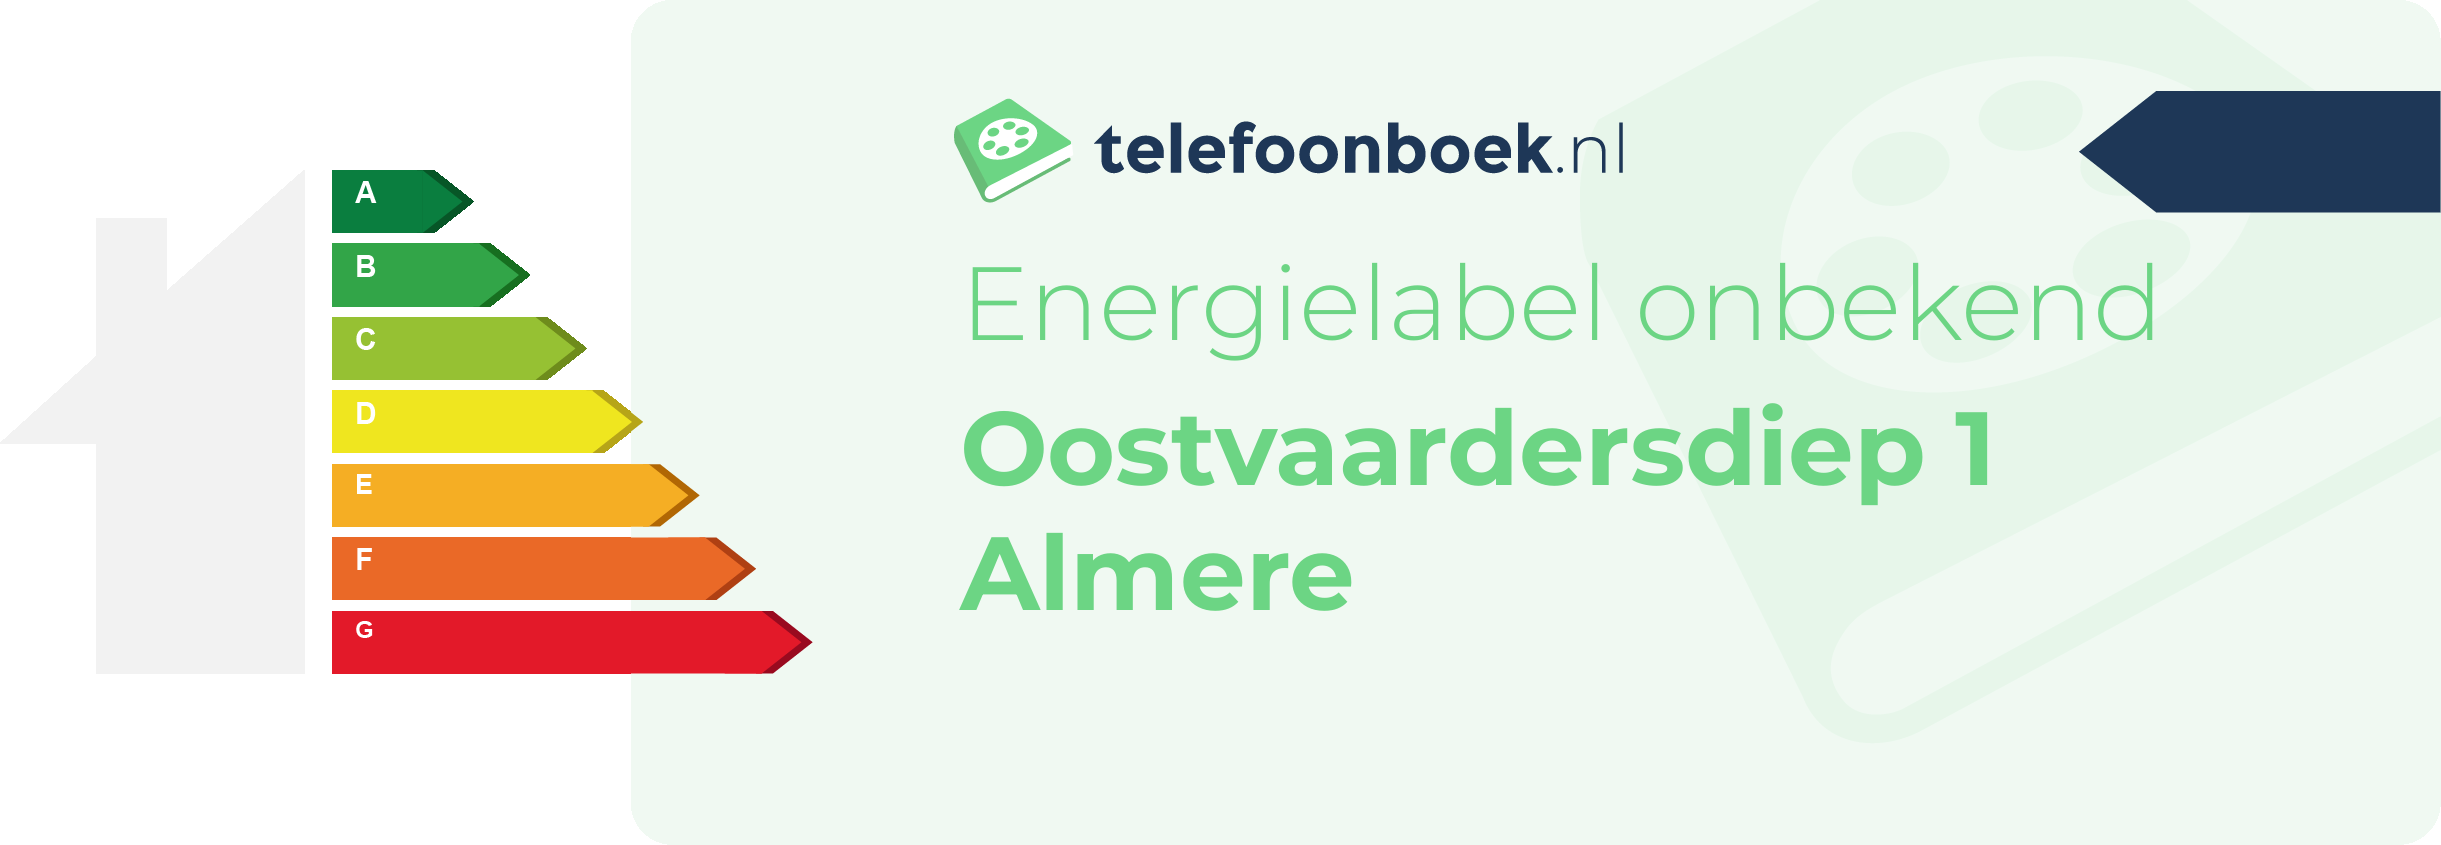 Energielabel Oostvaardersdiep 1 Almere